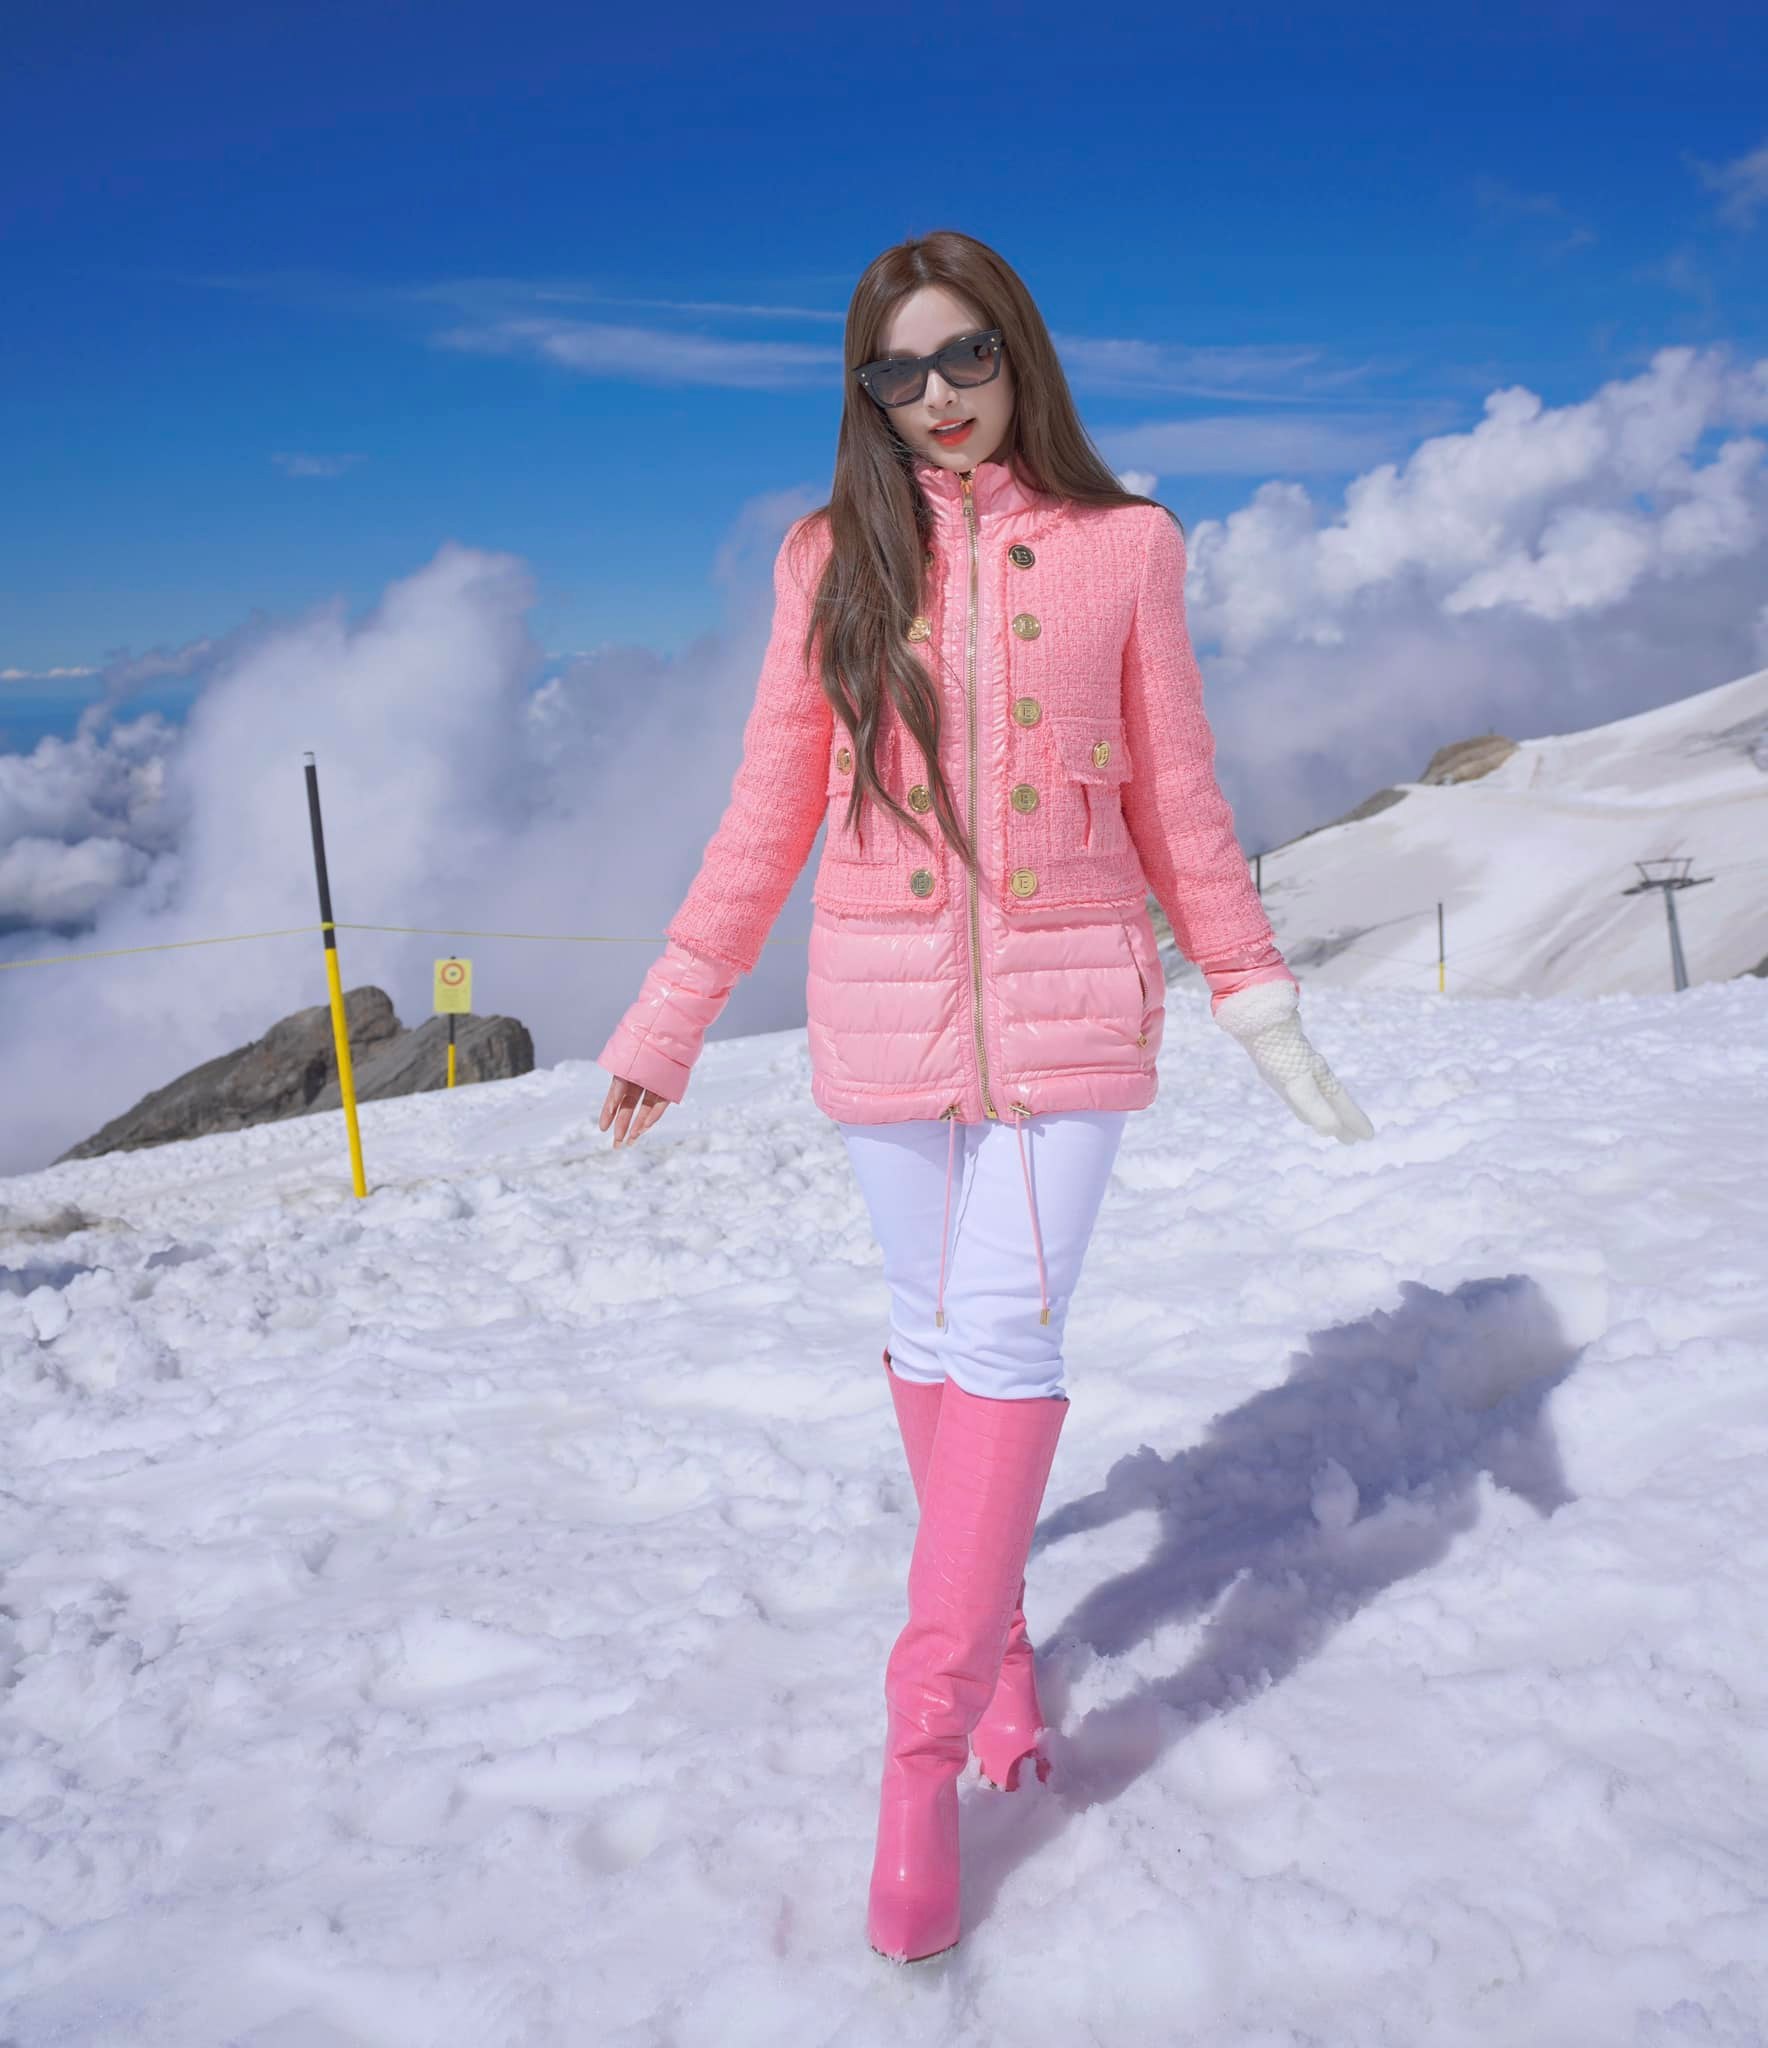 Huyền Baby diện set đồ màu hồng nổi bật, đeo túi xách của Chanel chụp ảnh trên núi tuyết ở Thụy Sĩ. Màu hồng giúp người diện nổi bật hơn giữa không gian màu trắng là chủ đạo.